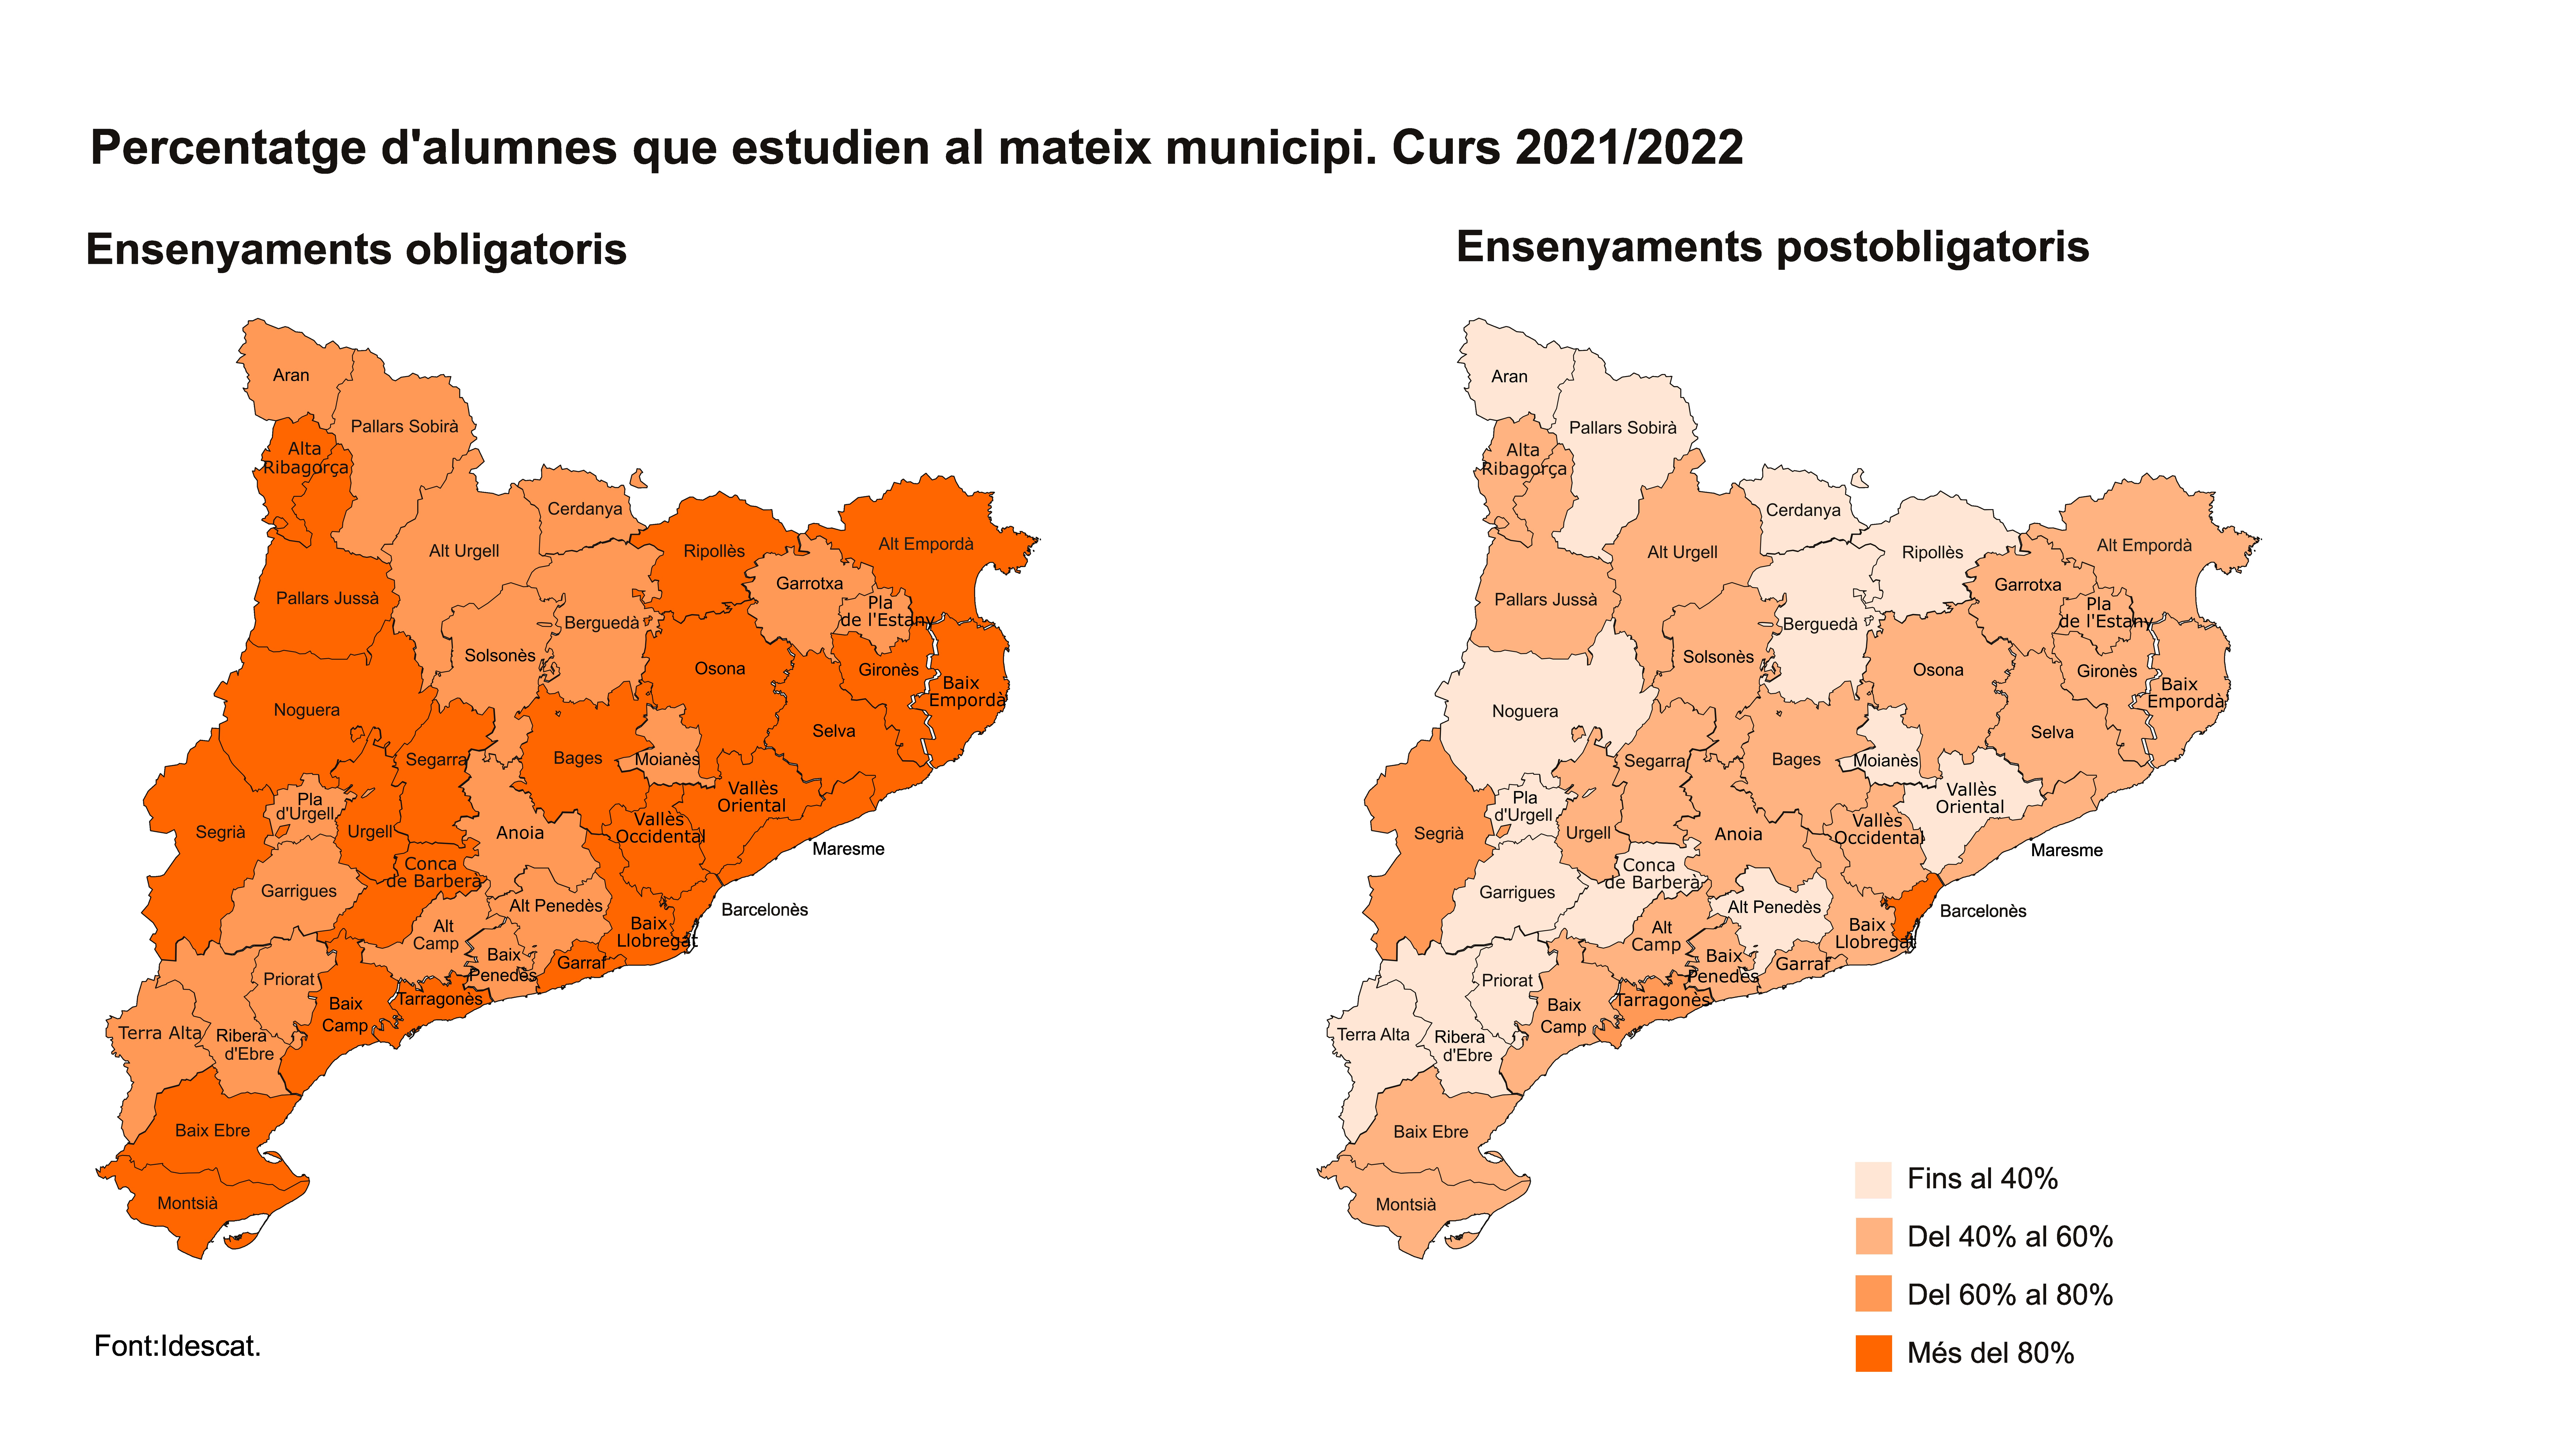 Mapa. Percentage d'alumnes que estuduien al mateix municipi on viuen. Ensenyaments obligatoris i postobligatoris. Curs 2021/2022